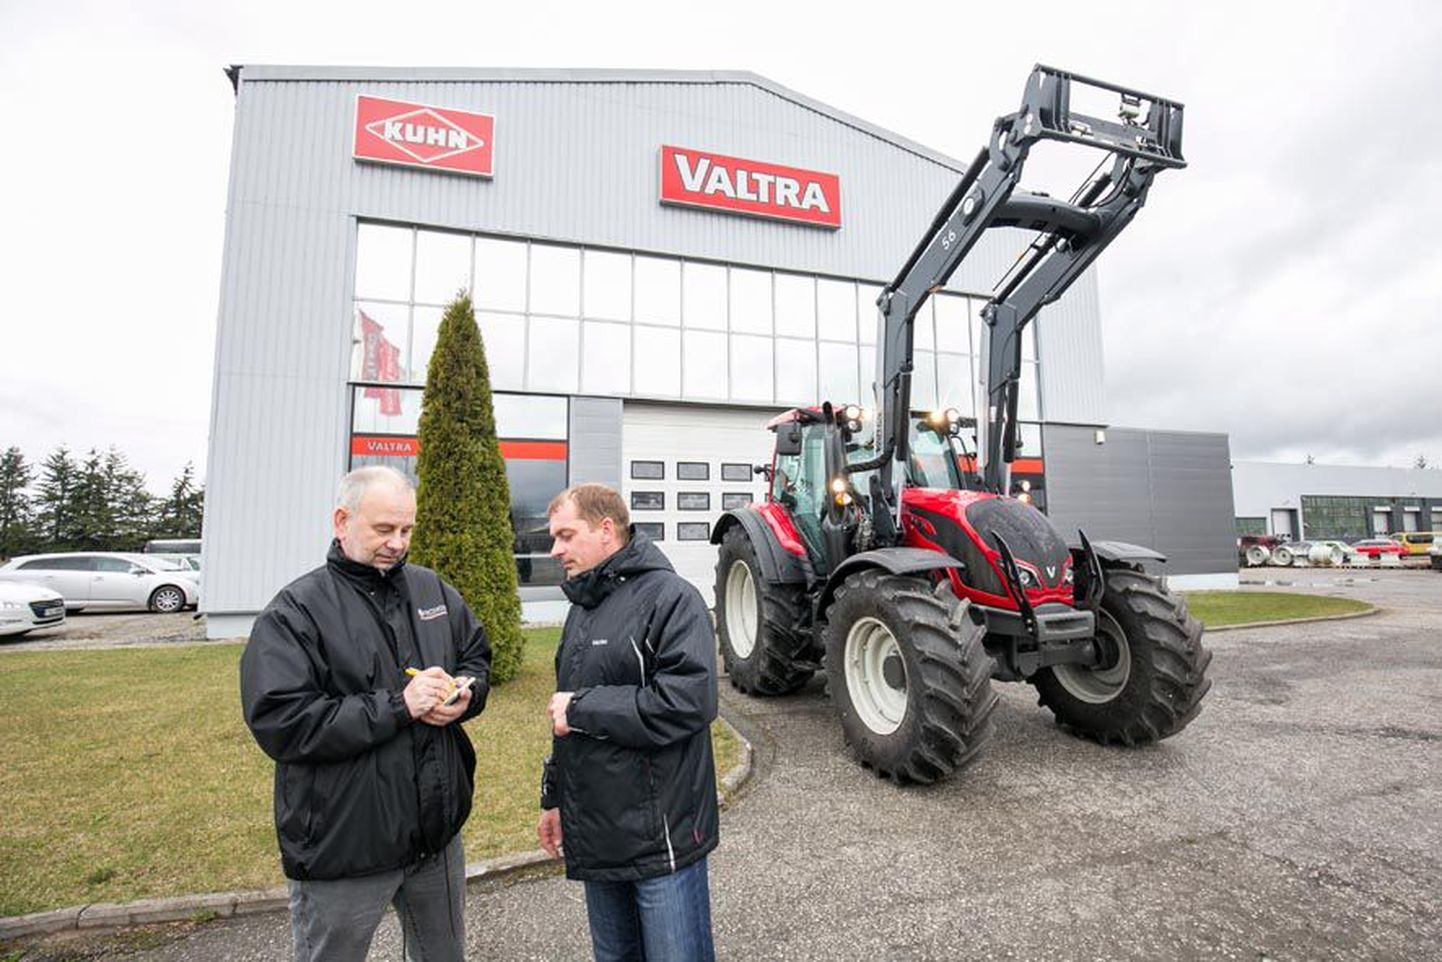 AS Taure müügijuhataja Toomas Jürgen (vasakul) ja müügiesindaja Janek Rannama näitavad maamessil Valtra traktori uusimat, N4 mudelit, mida eestlased näevad esimest korda.